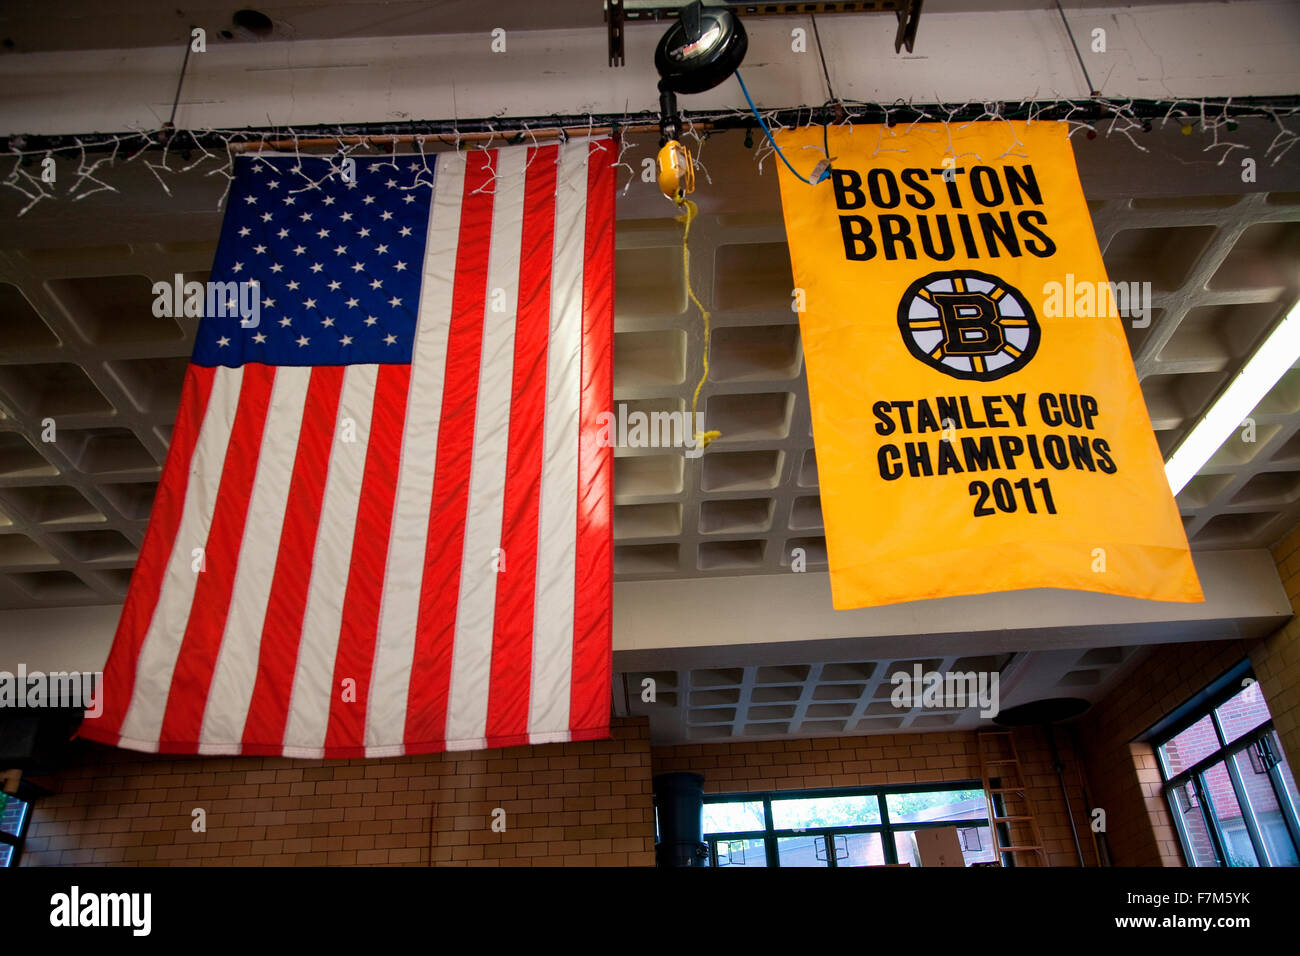 Banner di Boston Bruins vincendo la Stanley Cup di Hockey, all'interno della scala #1, motore #8, Firestation in storico North End, la sezione italiana di Boston, MA Foto Stock